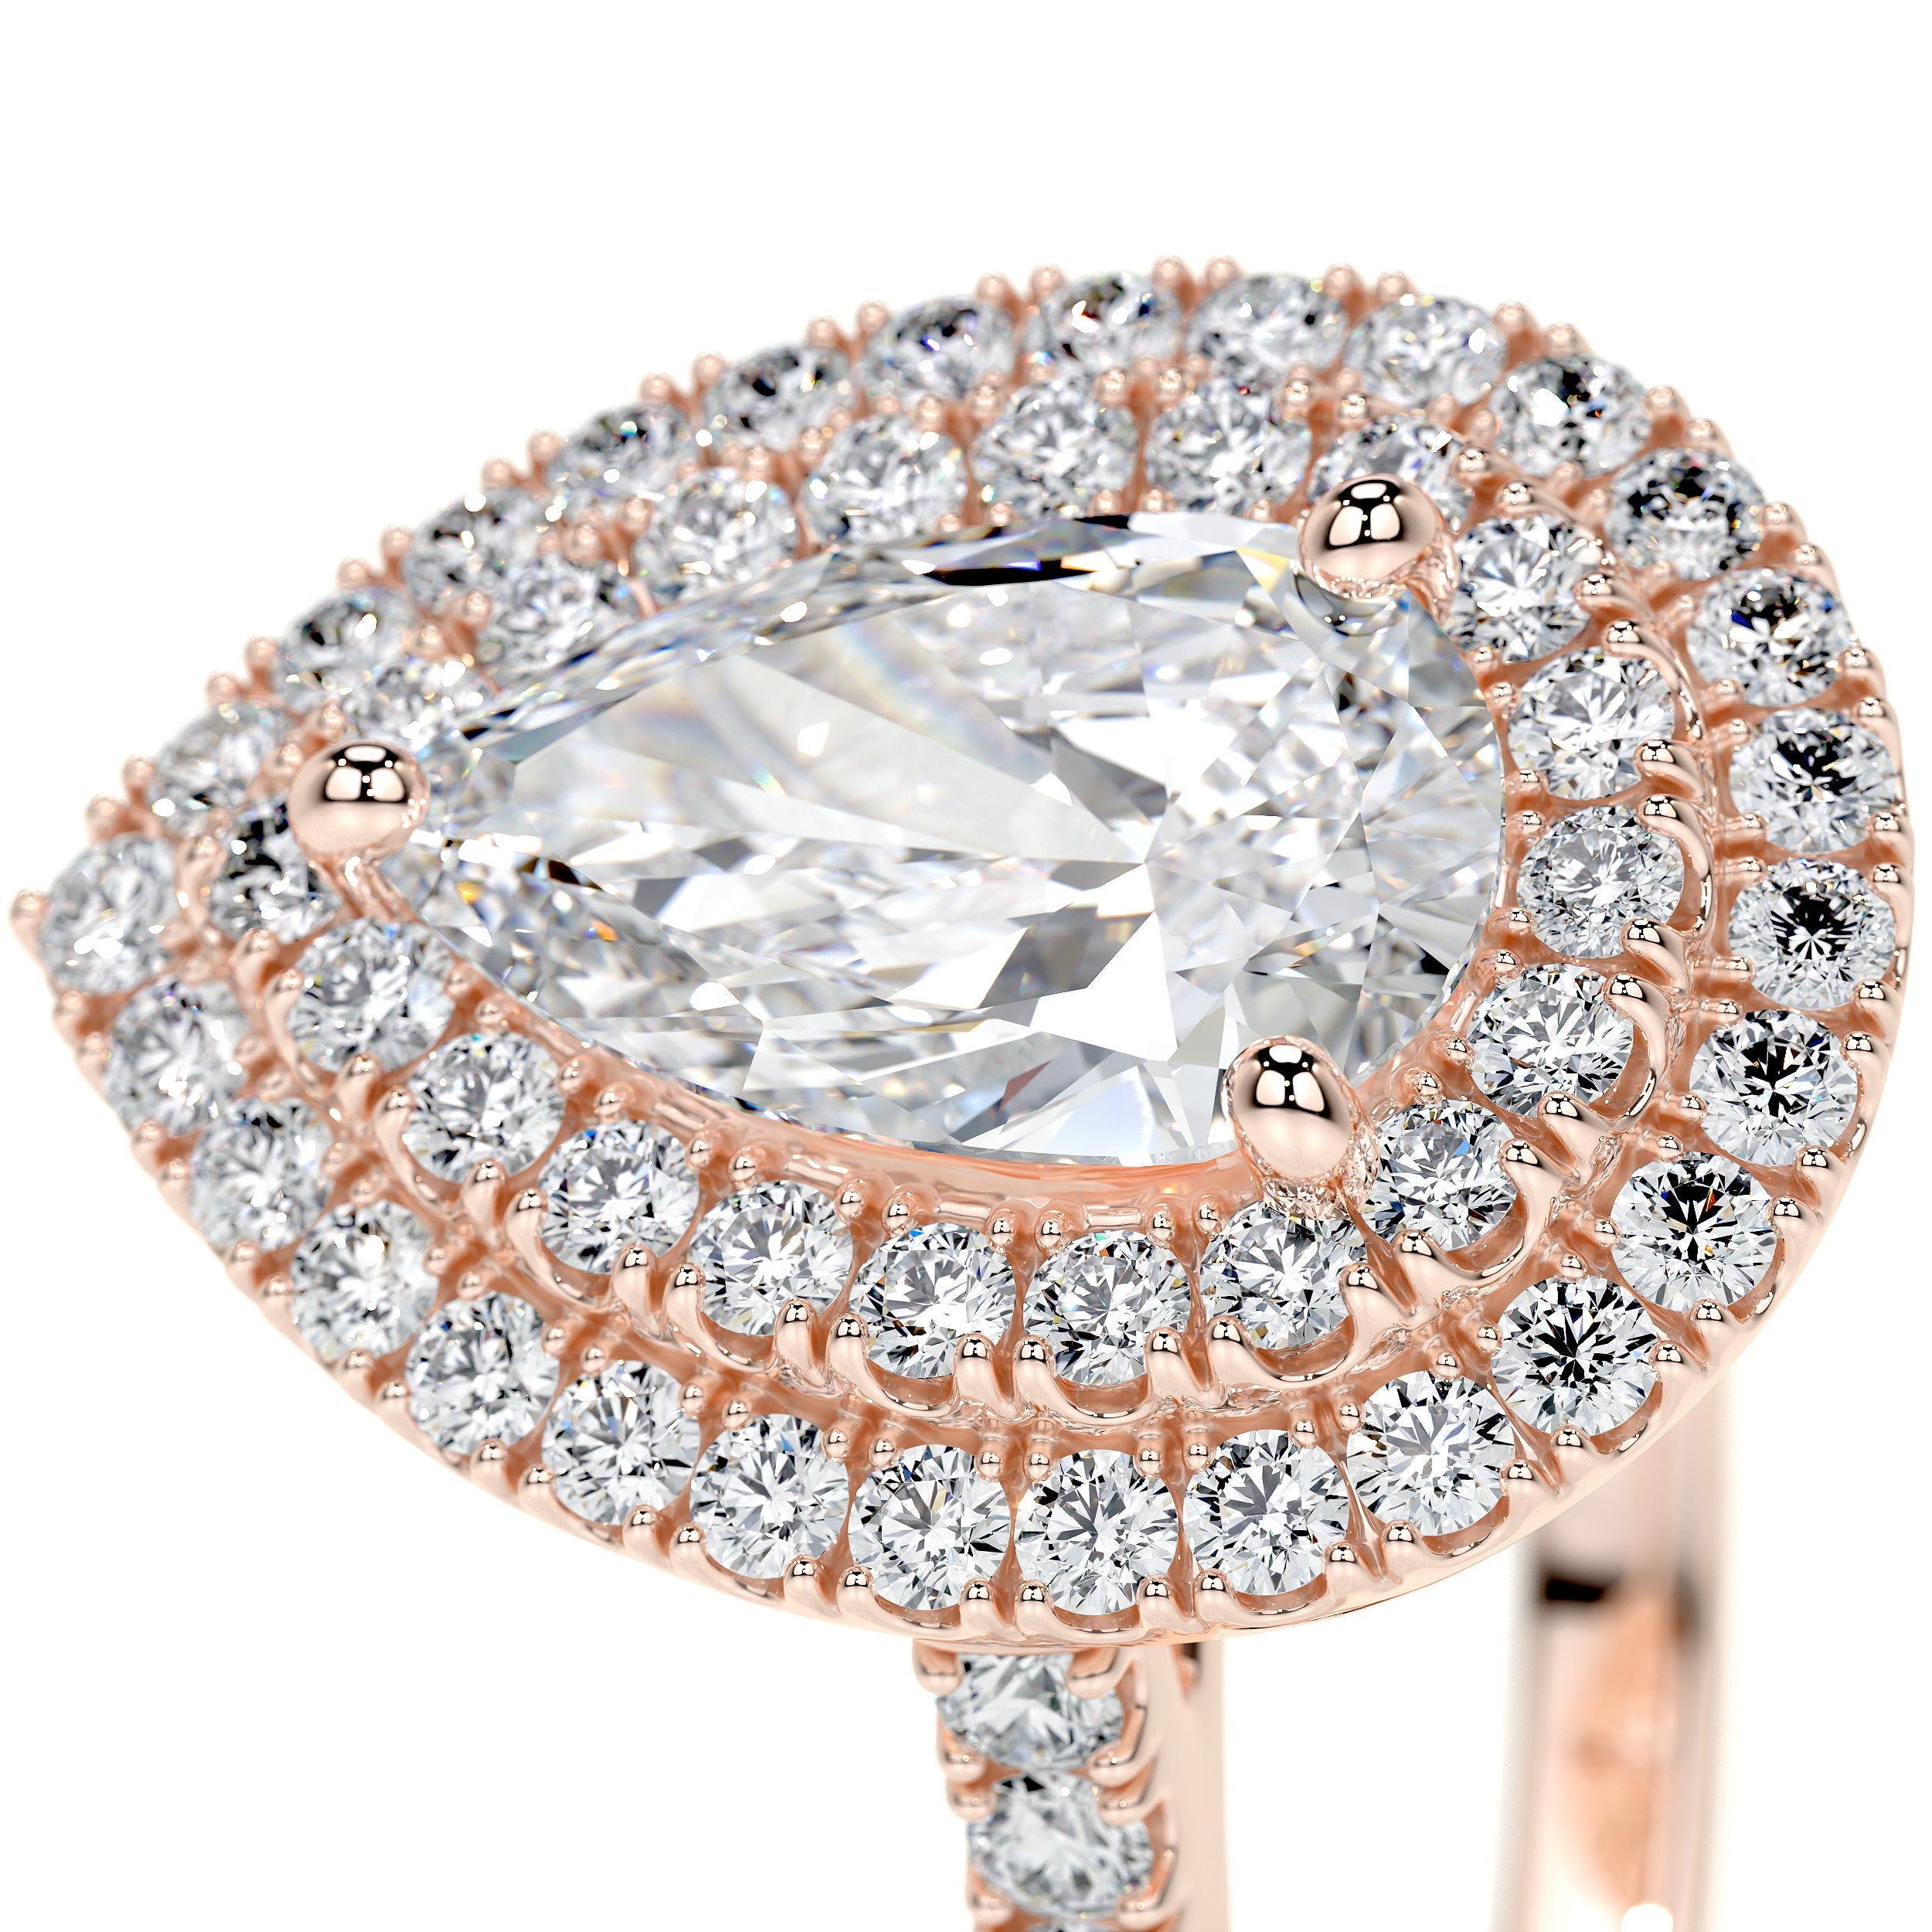 Gloria Lab Grown Diamond Ring   (1.65 Carat) -14K Rose Gold